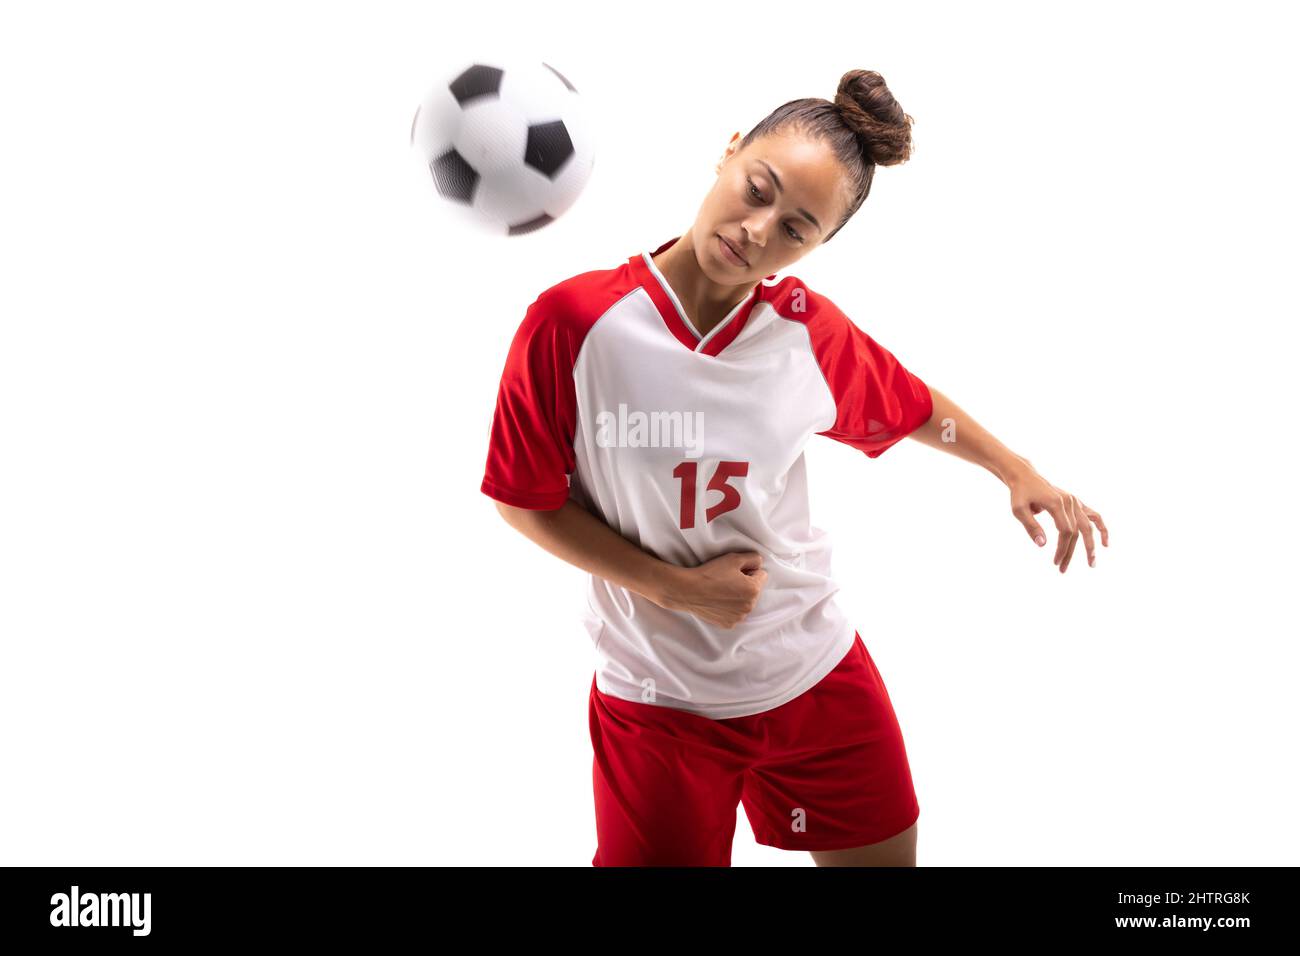 Biracial junge weibliche Fußballspielerin schlagen Fußball mit Schulter, während Fußball spielen Stockfoto